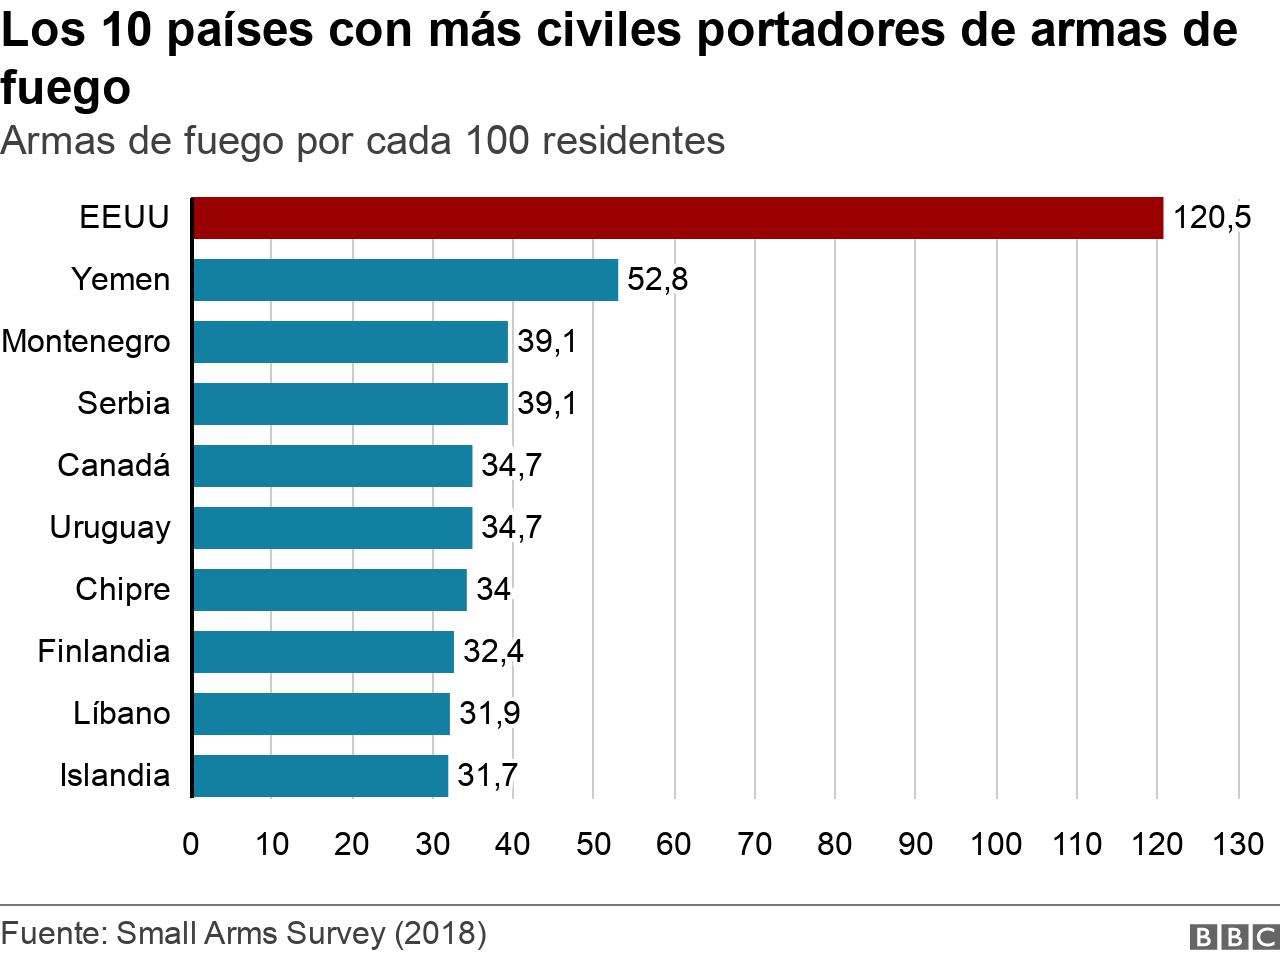 Los 10 países con más civiles portadores de armas de fuego.